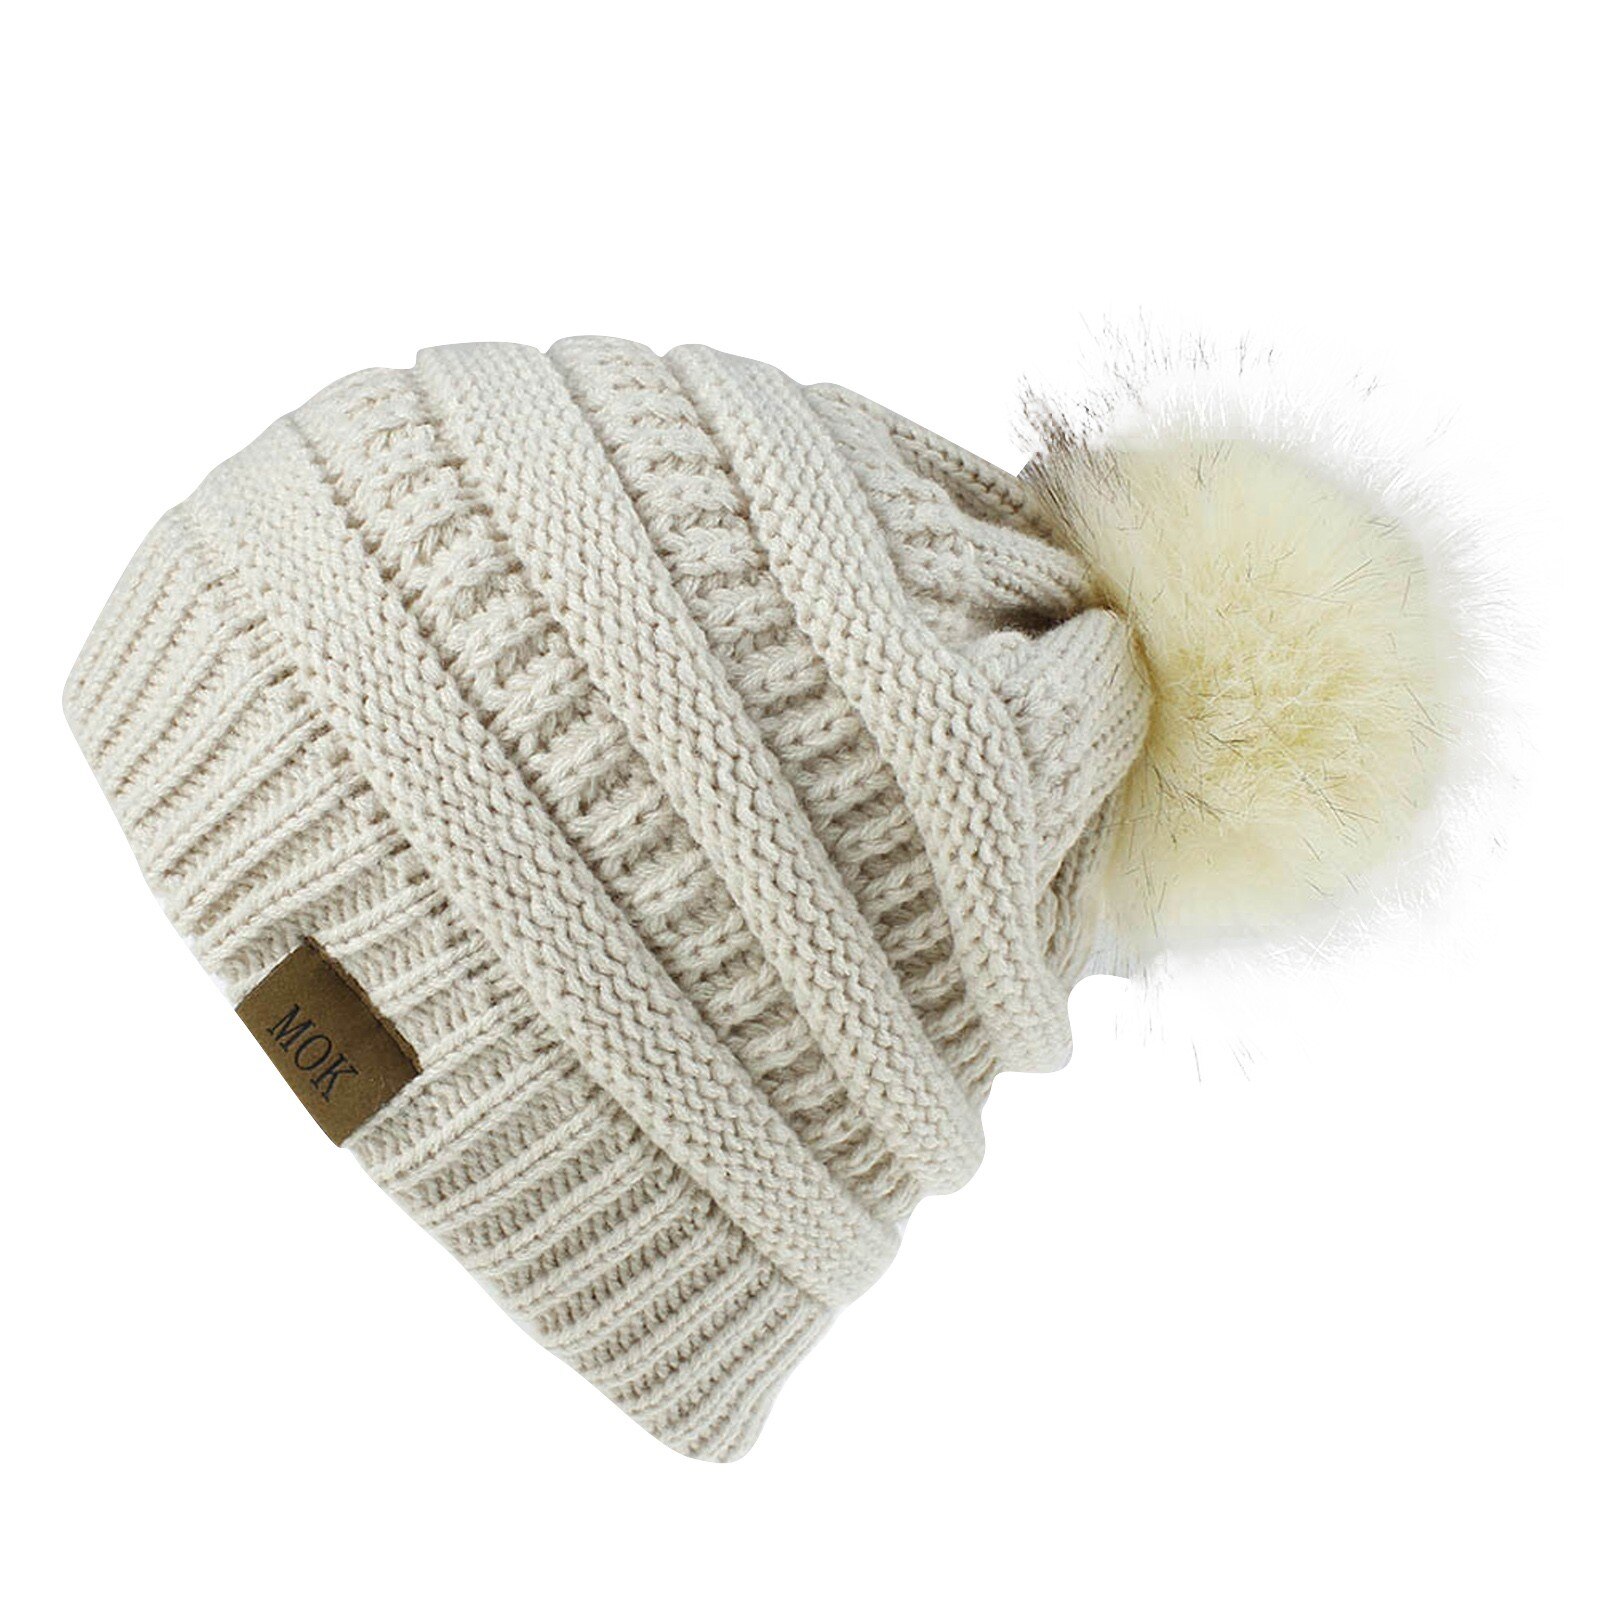 E la moda donna nuova E di alta qualità mantiene caldi cappelli invernali cappello a orlo in lana lavorato a maglia morbido delicato sulla pelle, traspirante: BG